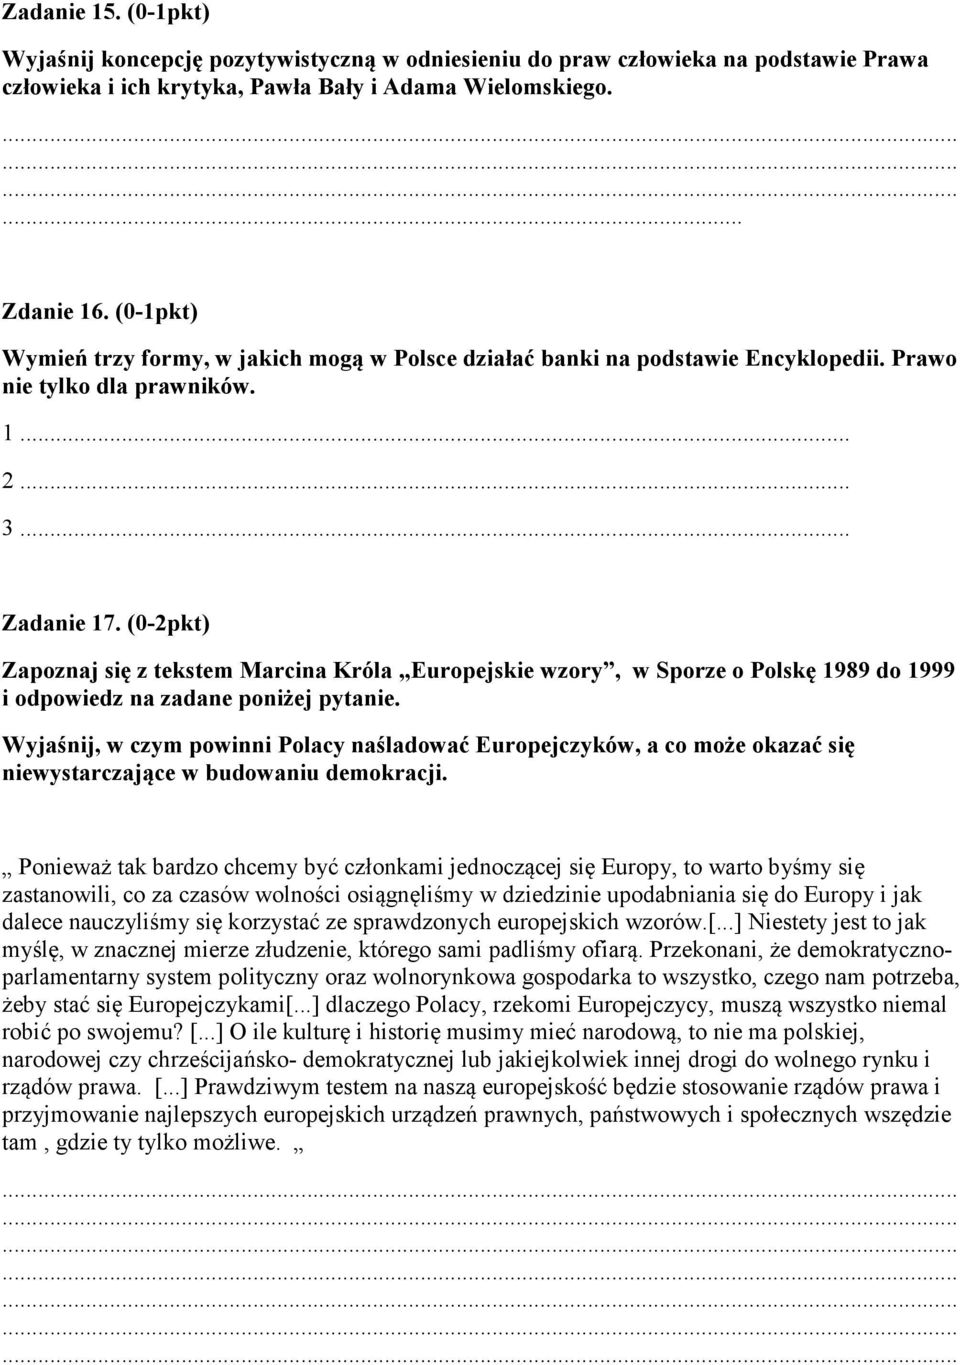 (0-2pkt) Zapoznaj się z tekstem Marcina Króla Europejskie wzory, w Sporze o Polskę 1989 do 1999 i odpowiedz na zadane poniżej pytanie.